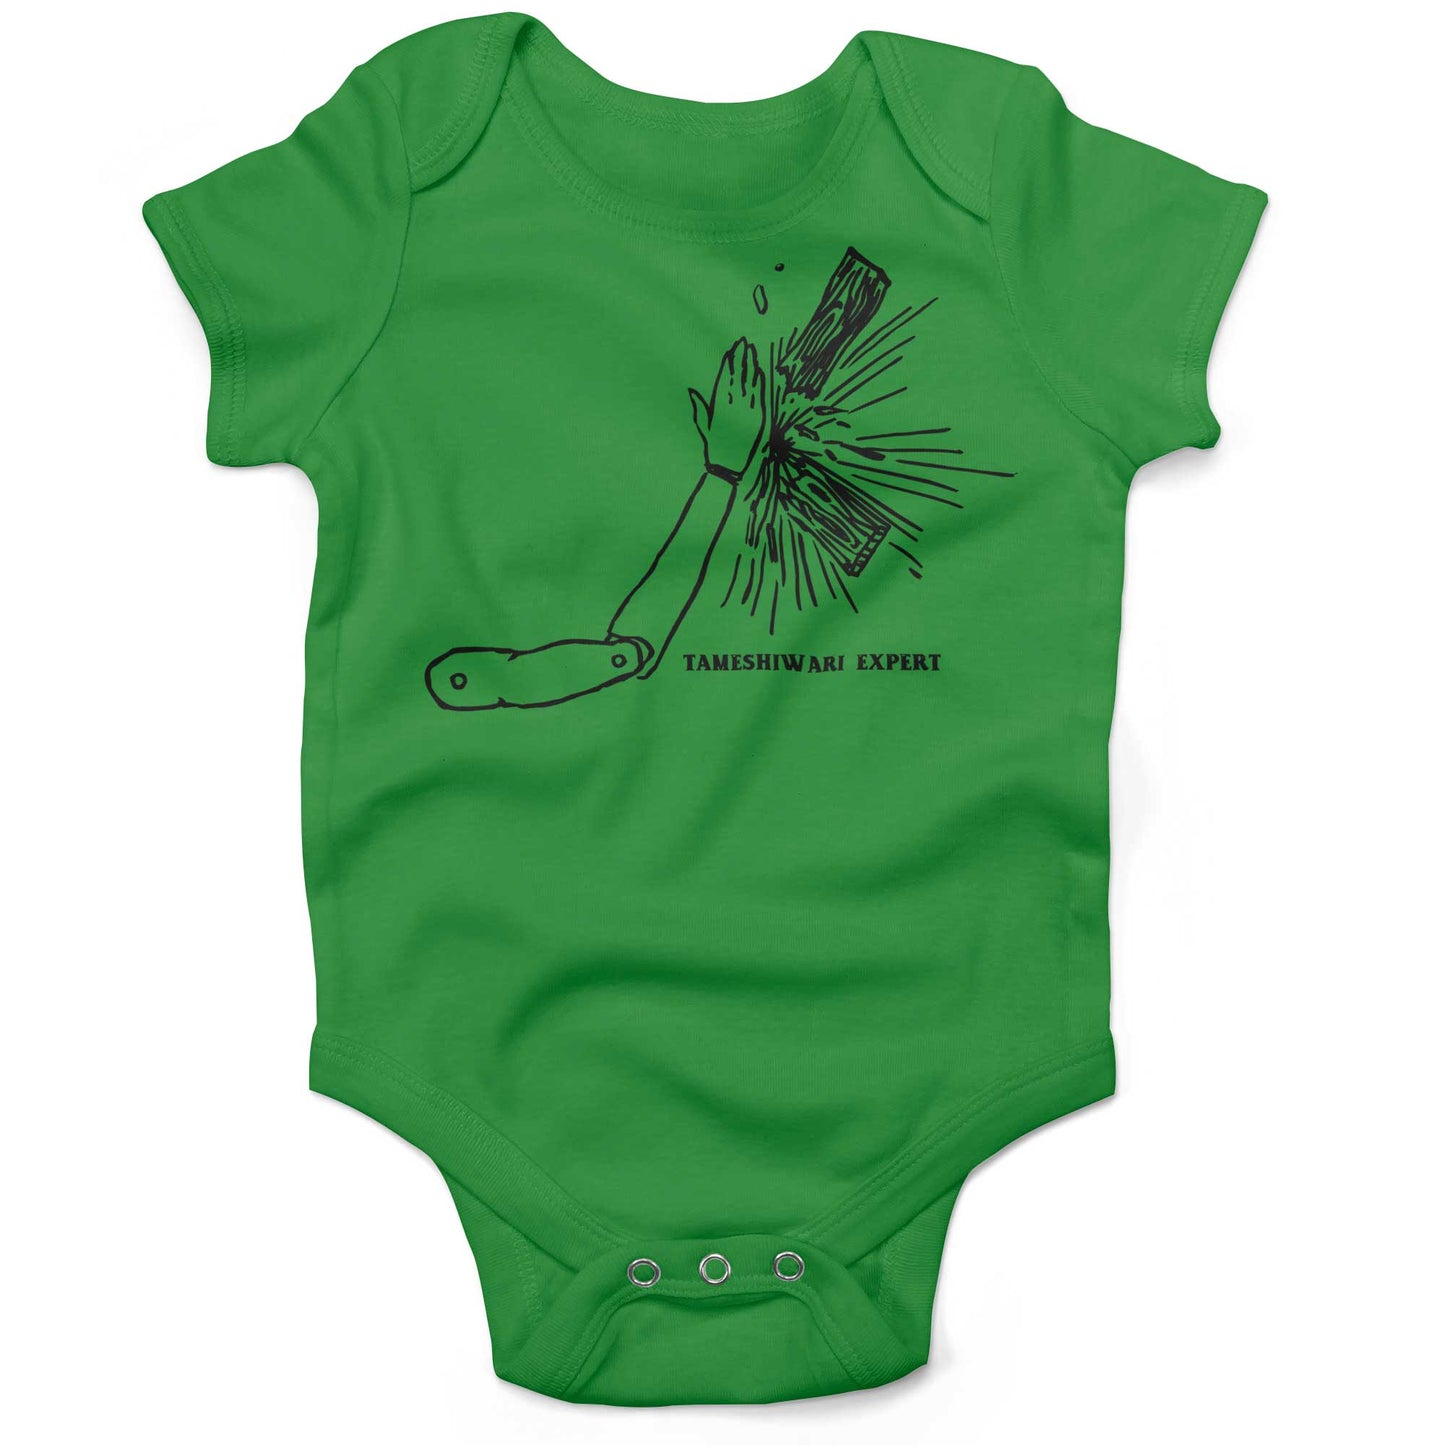 Tameshiwari Expert Infant Bodysuit-Grass Green-3-6 months